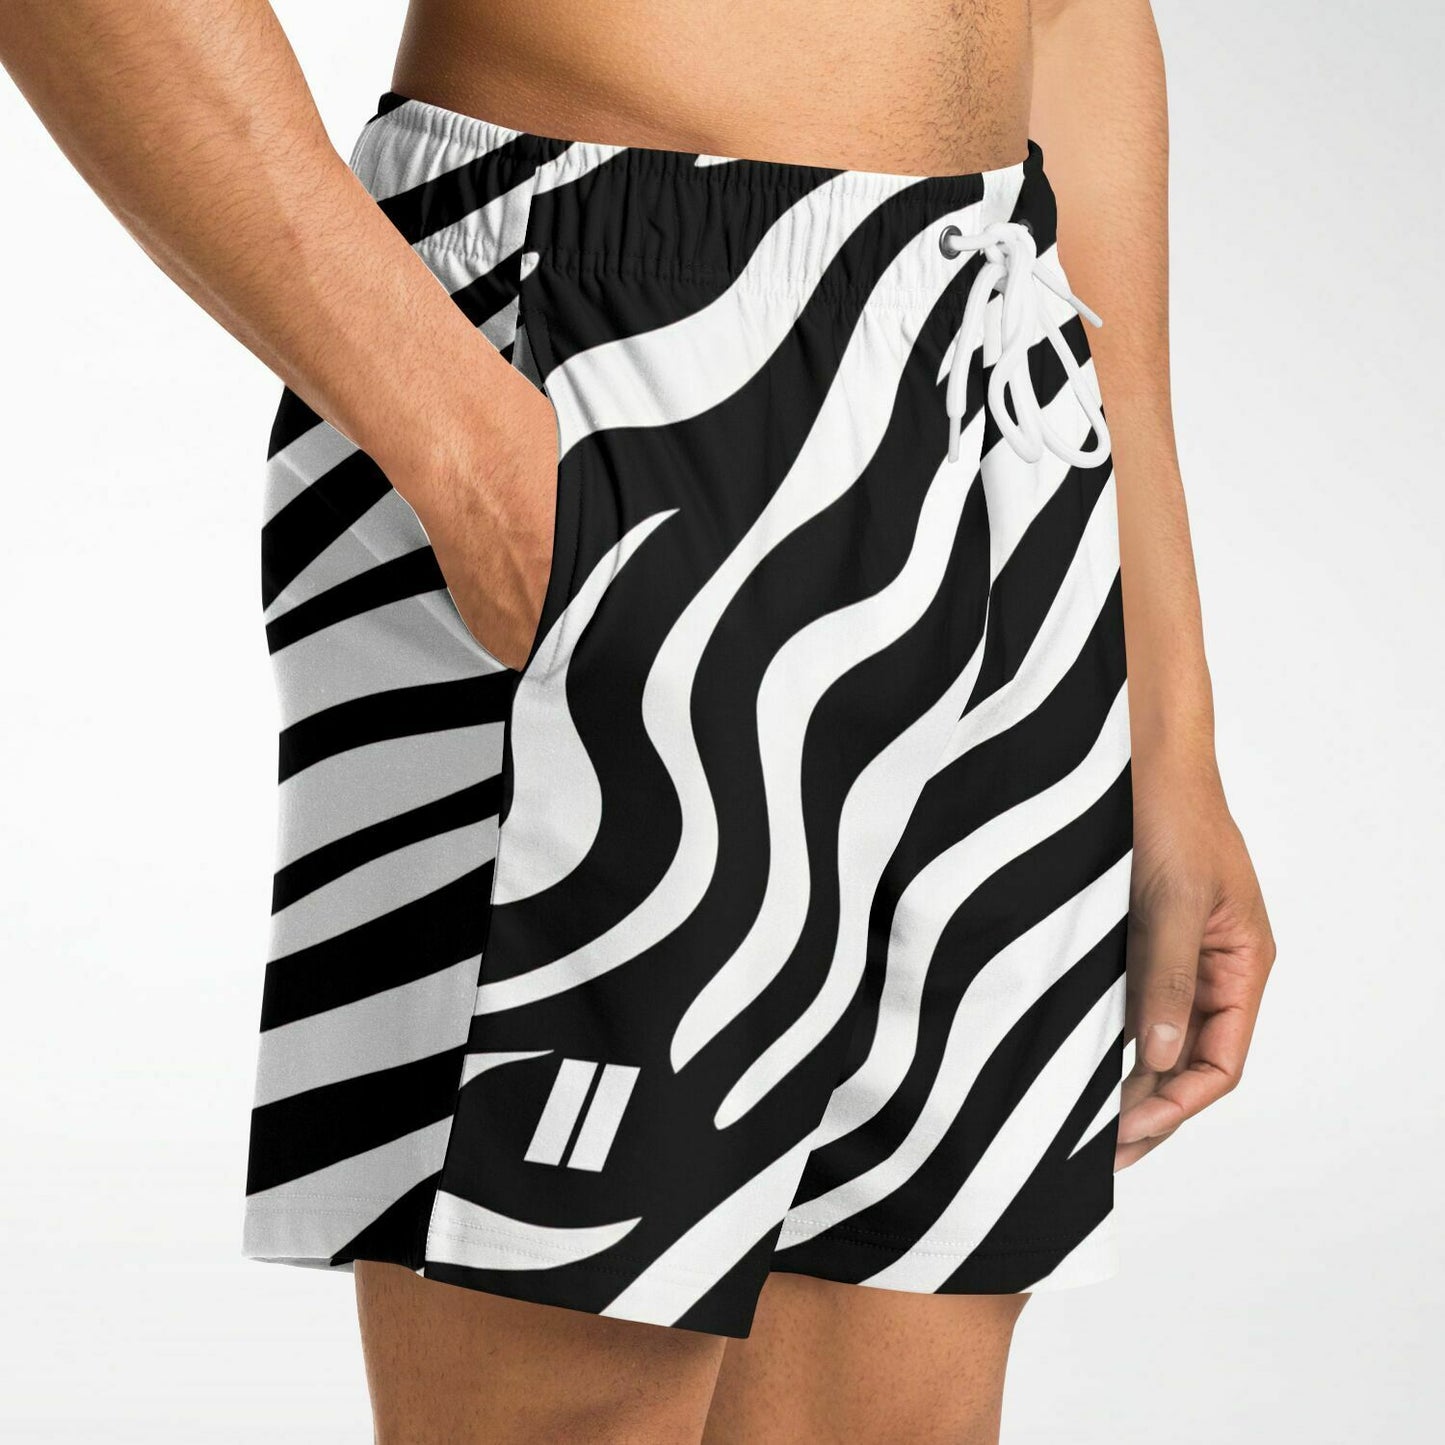 PRIIME Zebra Men's Fashion Shorts